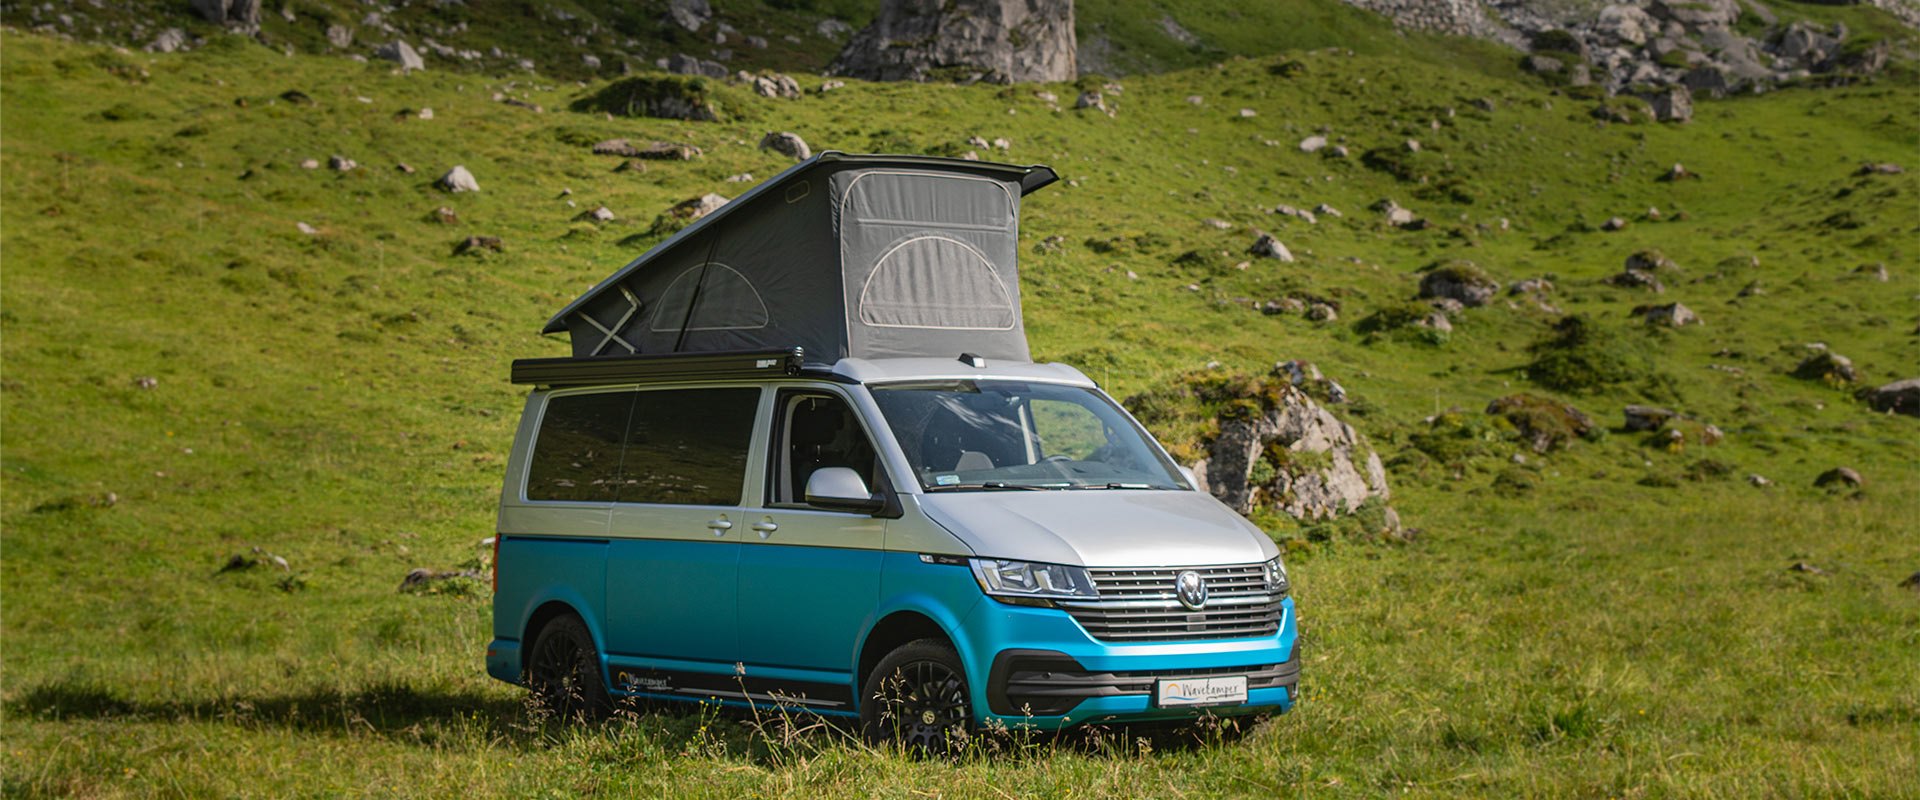 MoskitonetzDer SpaceCamper VW T6.1 Camping-Ausbau - Reisemobil und  Alltagsfahrzeug